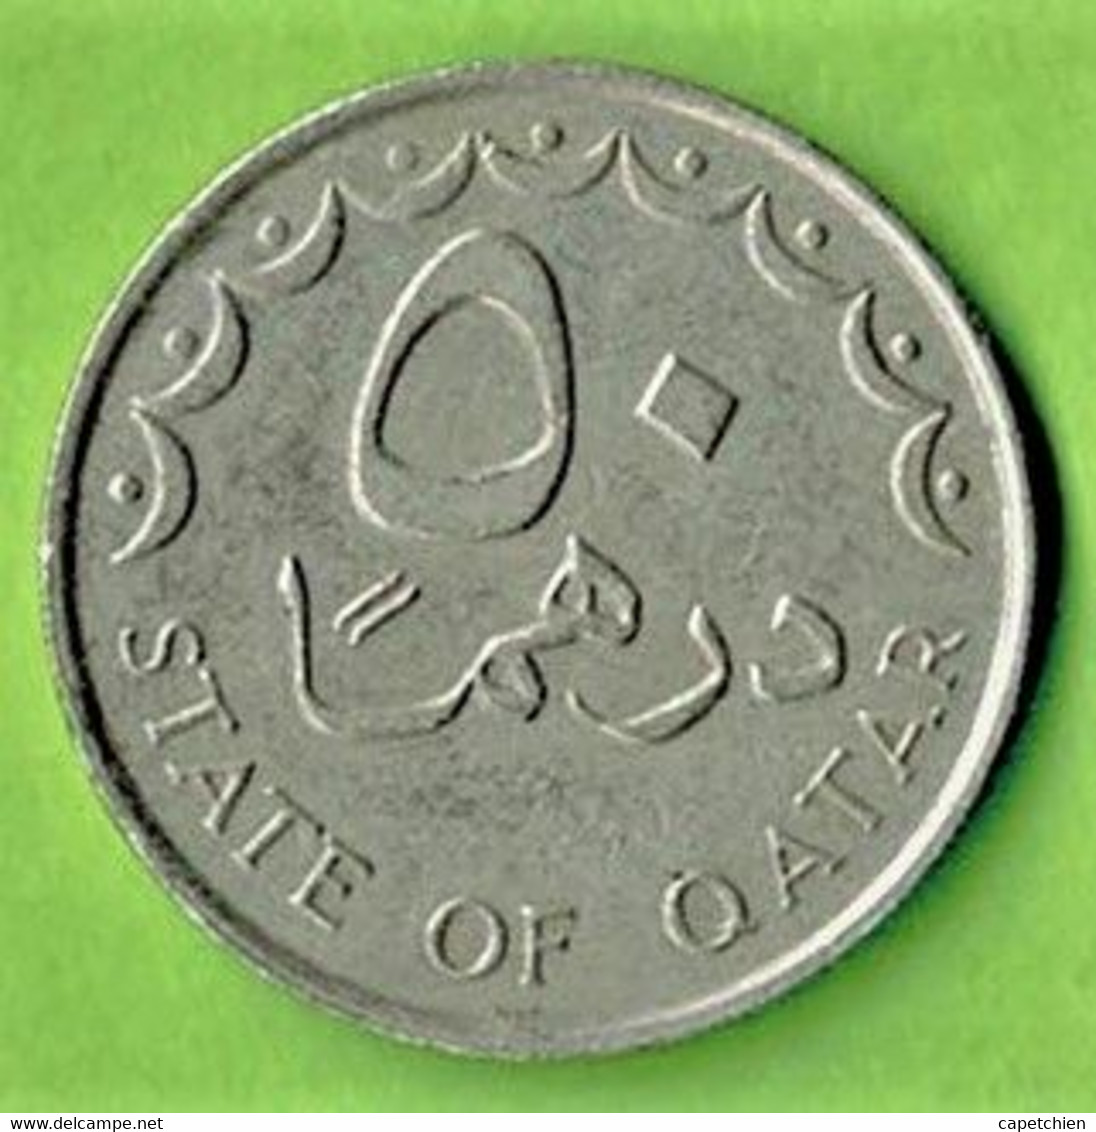 QATAR / STATE OF QATAR / 50 DIRHAMS / 1398 - 1978 - Qatar